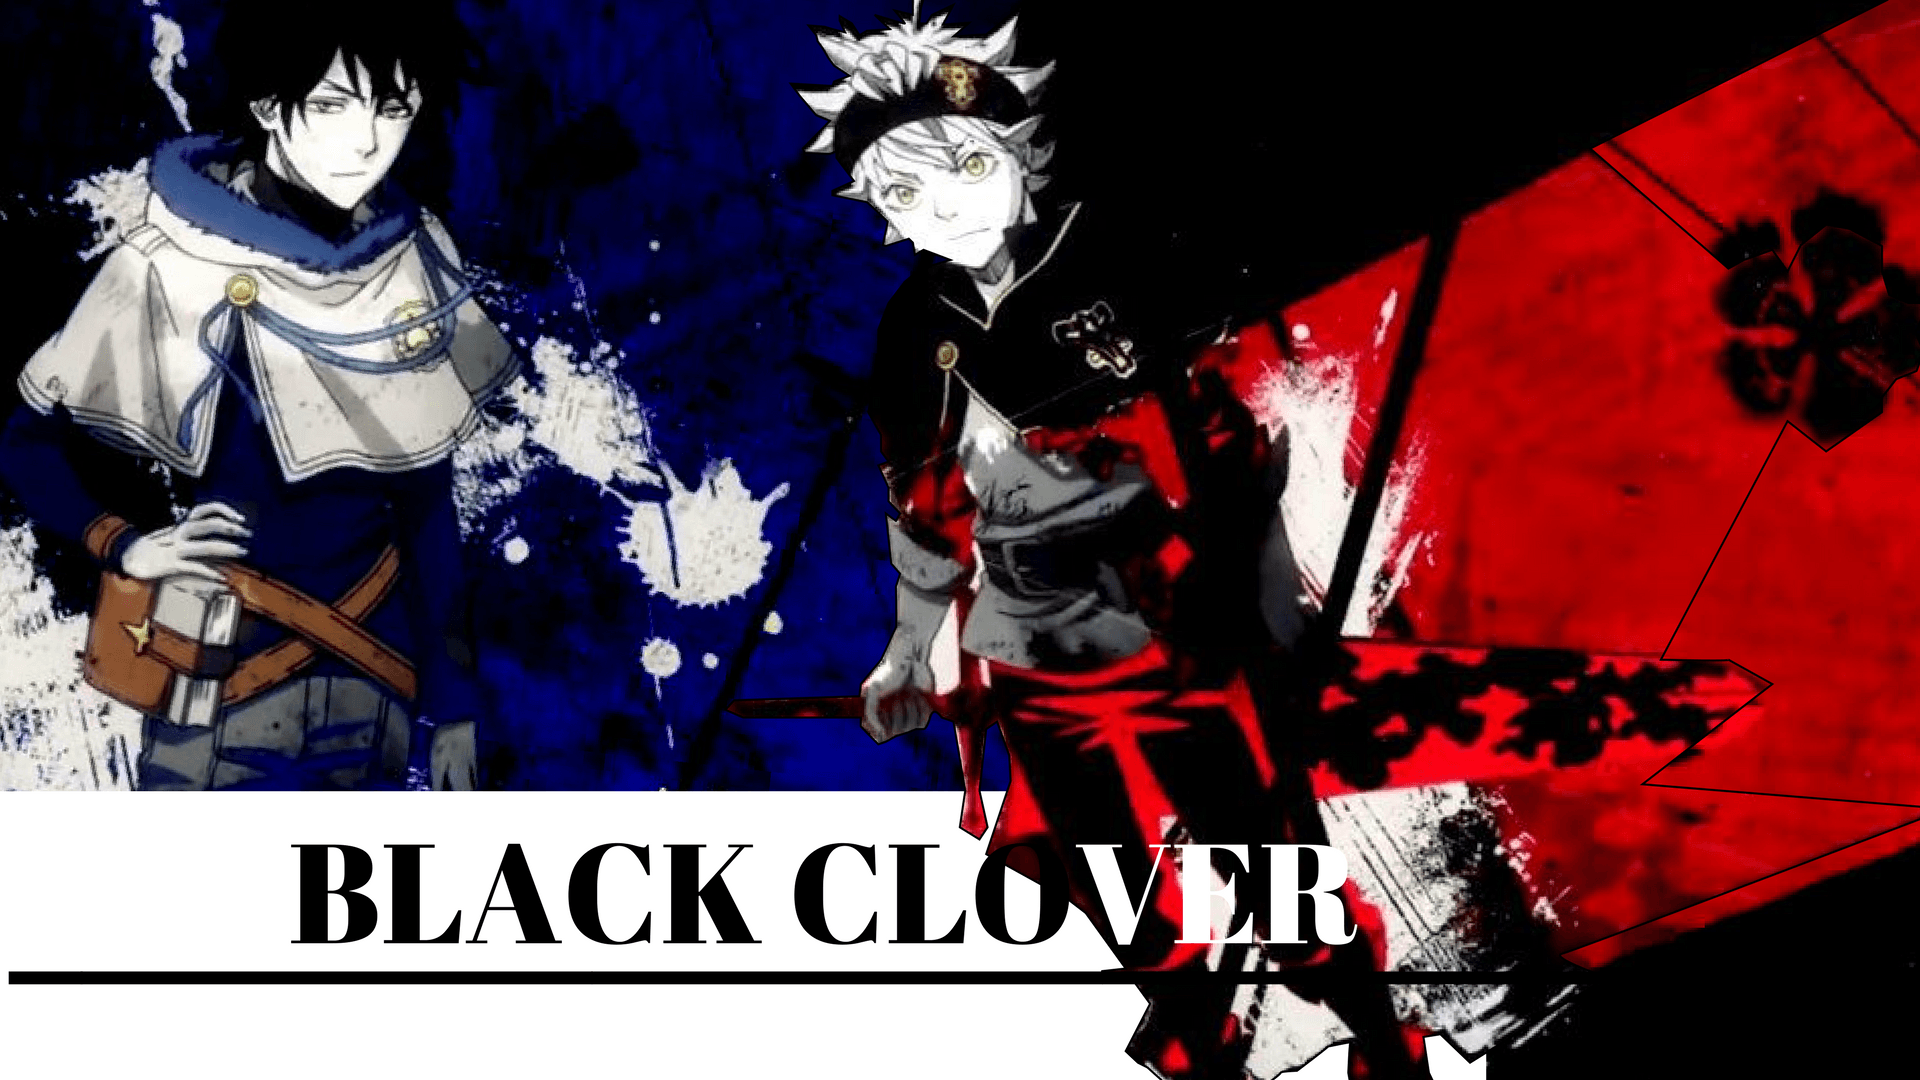 Black Clover Manga Wallpaper